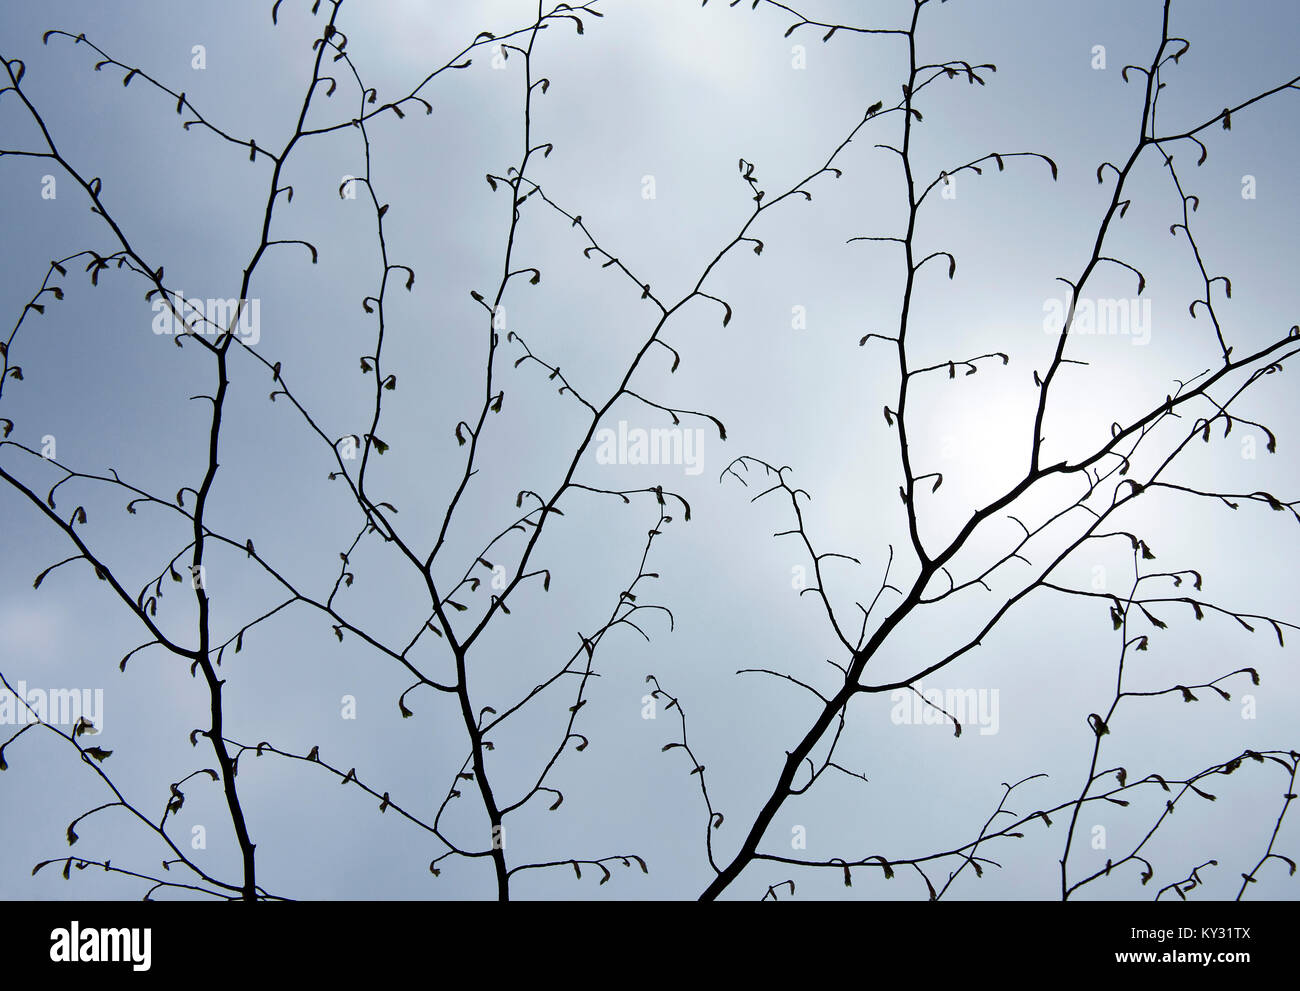 Faggio in primavera la visualizzazione di gemme, lo stelo e la filiale in un display grafico contro un pallido cielo blu, che mostra la bellezza della natura con una sorprendente patterns, Foto Stock